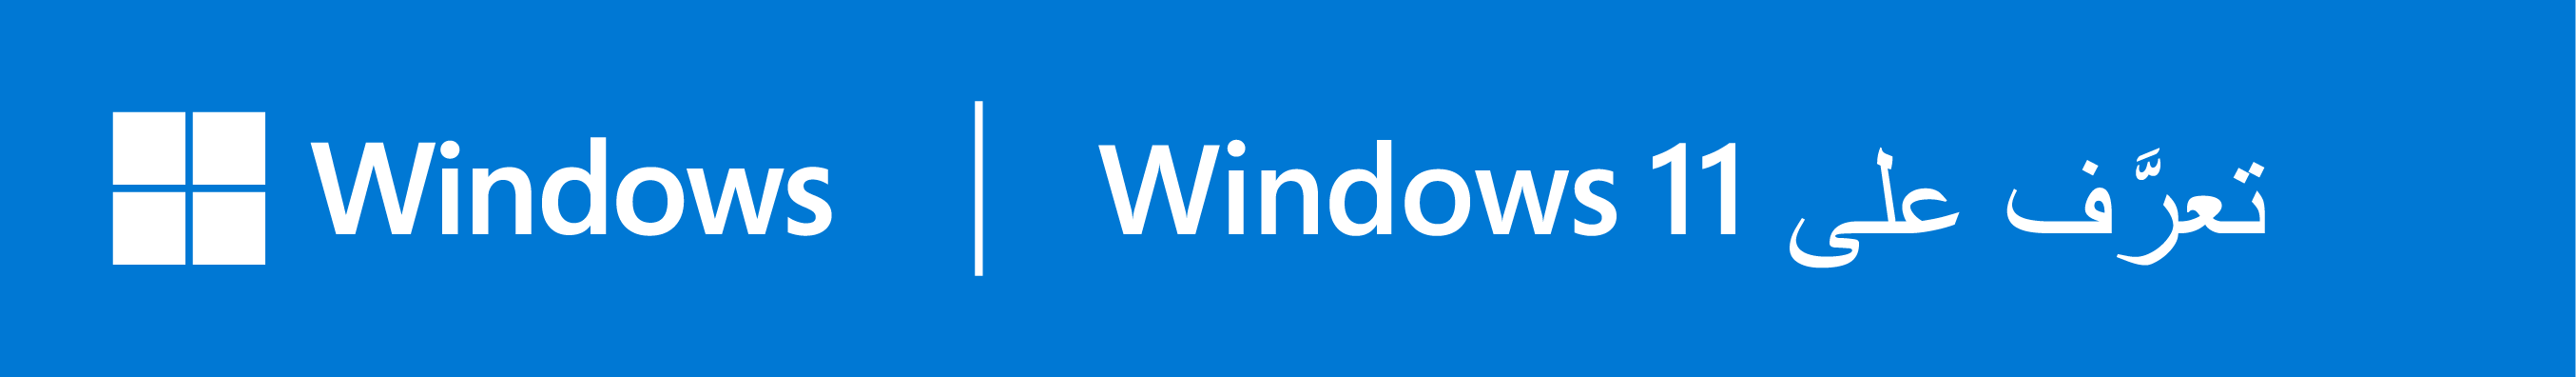 توصيشركة ASUS باستخدام Windows 11 Pro.